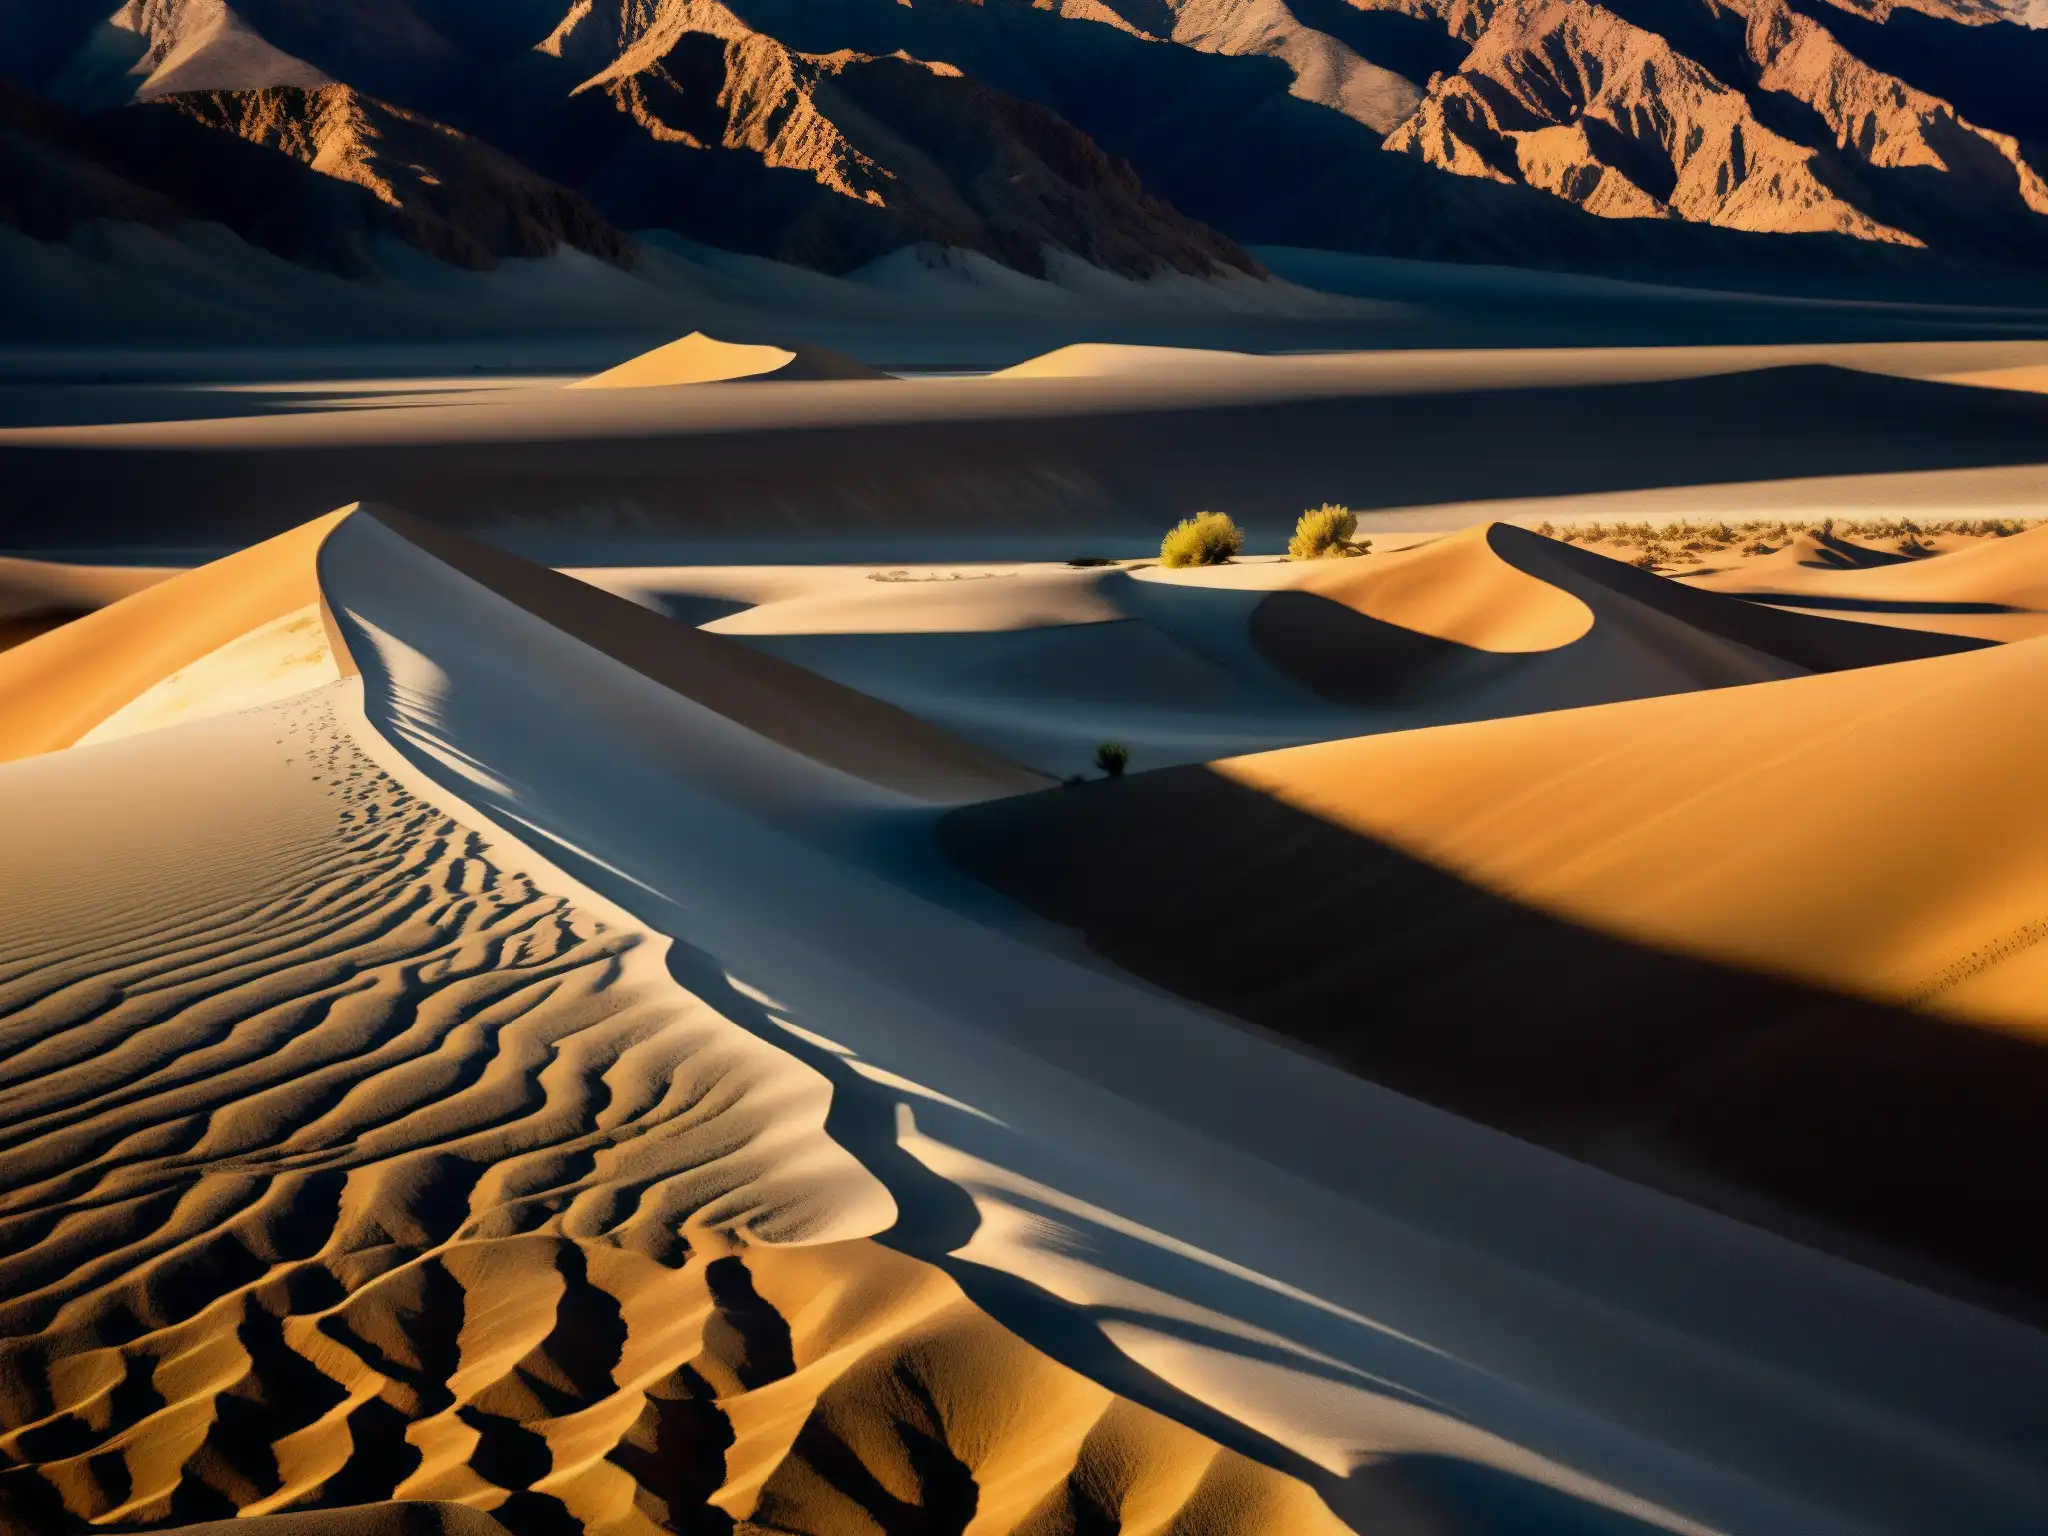 Imagen impactante del árido paisaje de Death Valley, con sombras alargadas bajo el sol